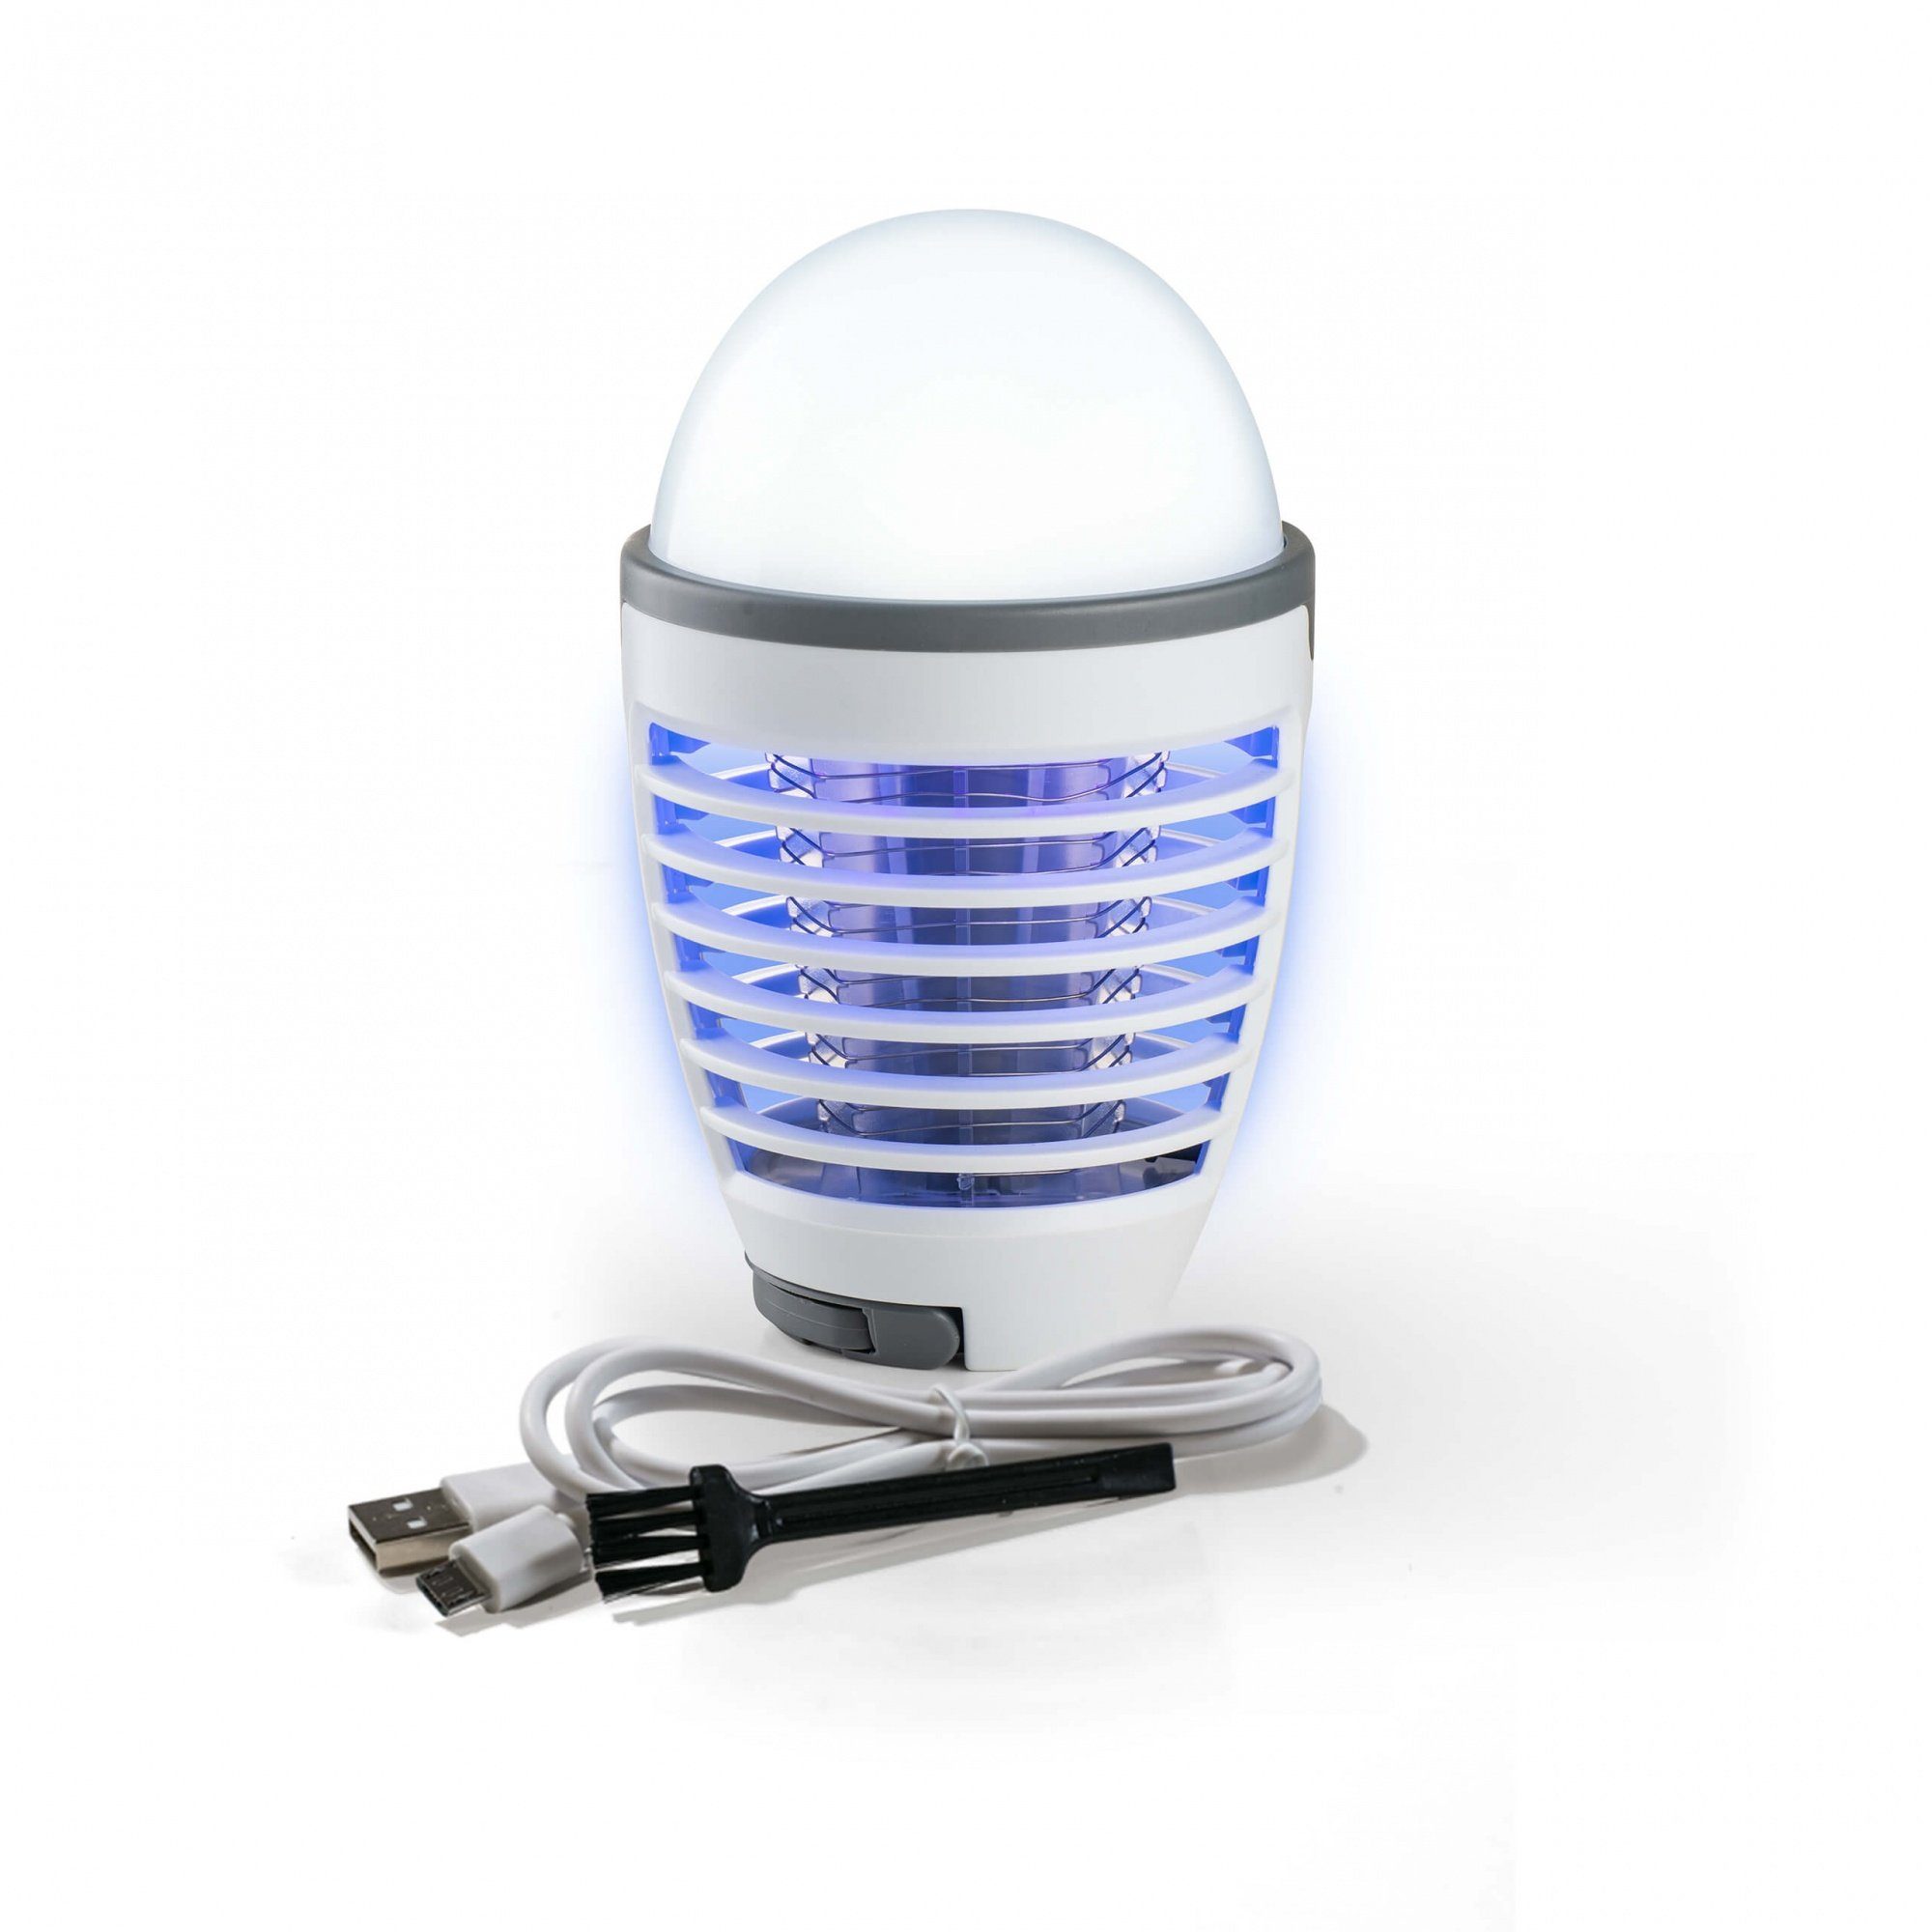 Genius Moskitonetz Moskito Killer Insektenlampe 3tlg. – kabellose UV-Licht Mückenfall (3 tlg., mit Hochspannungsgitter), LED-Licht und Akku - Insektenschutz auch beim Camping